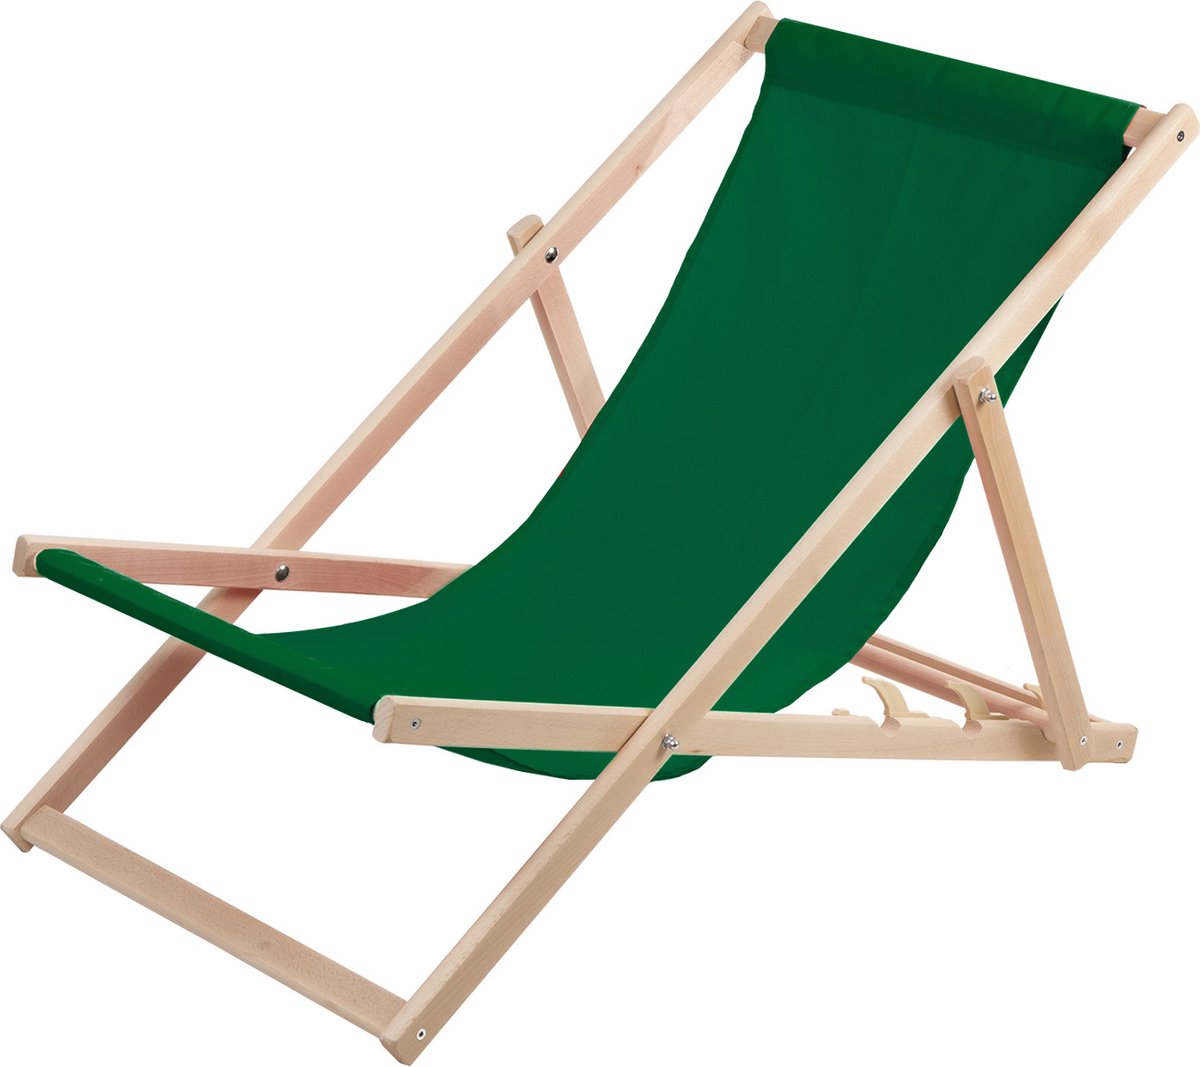 WOODOK - Ligstoel - Comfortabele houten ligstoel in groen ideaal voor het strand, balkon, terras